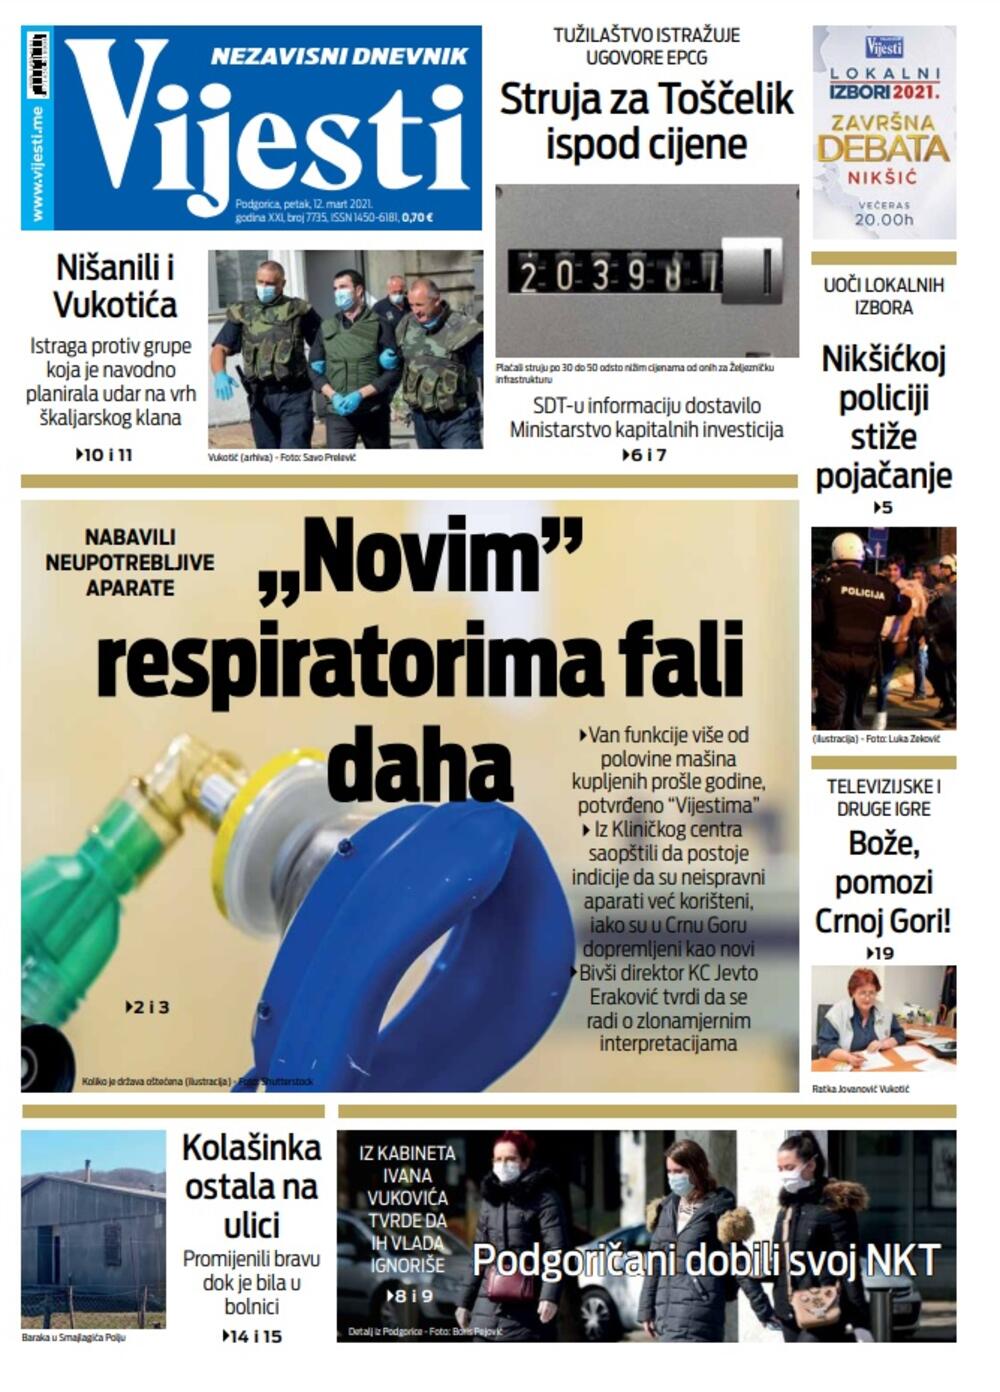 Naslovna strana "Vijesti" za petak 12. mart 2021. godine, Foto: Vijesti